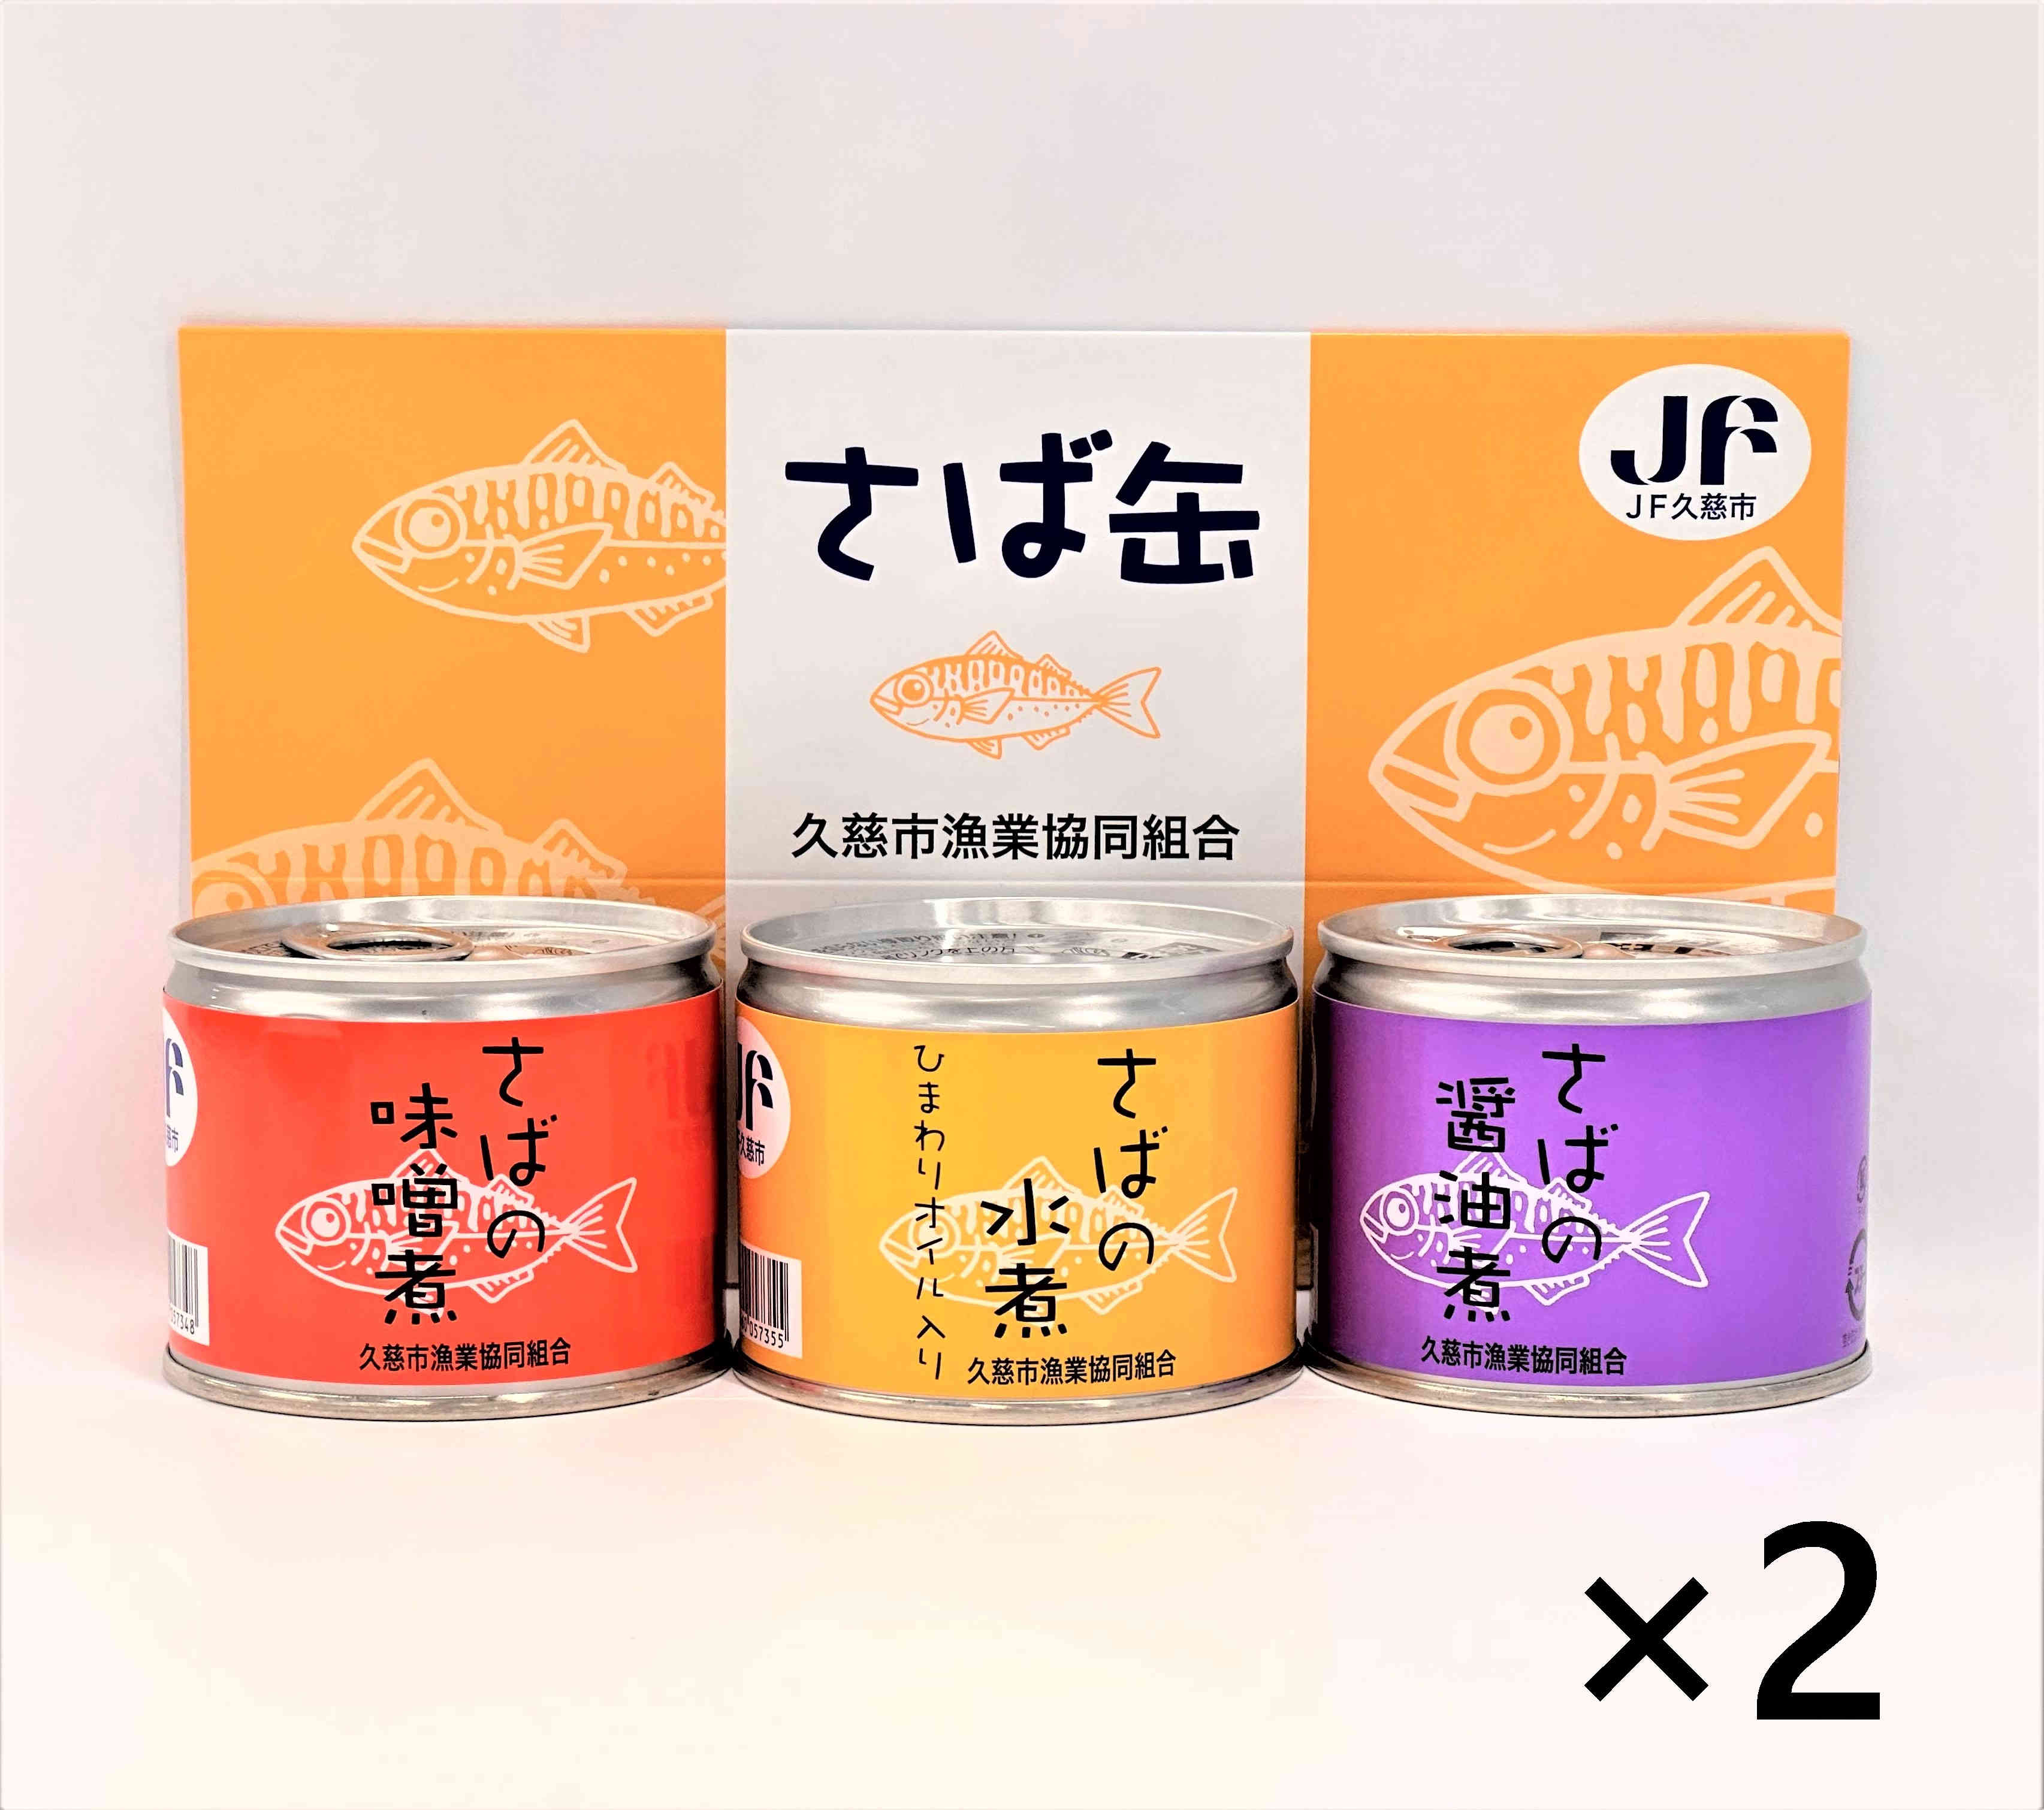 JFおさかなマルシェ ギョギョいち / 真さば缶詰3種食べくらべ6缶セット